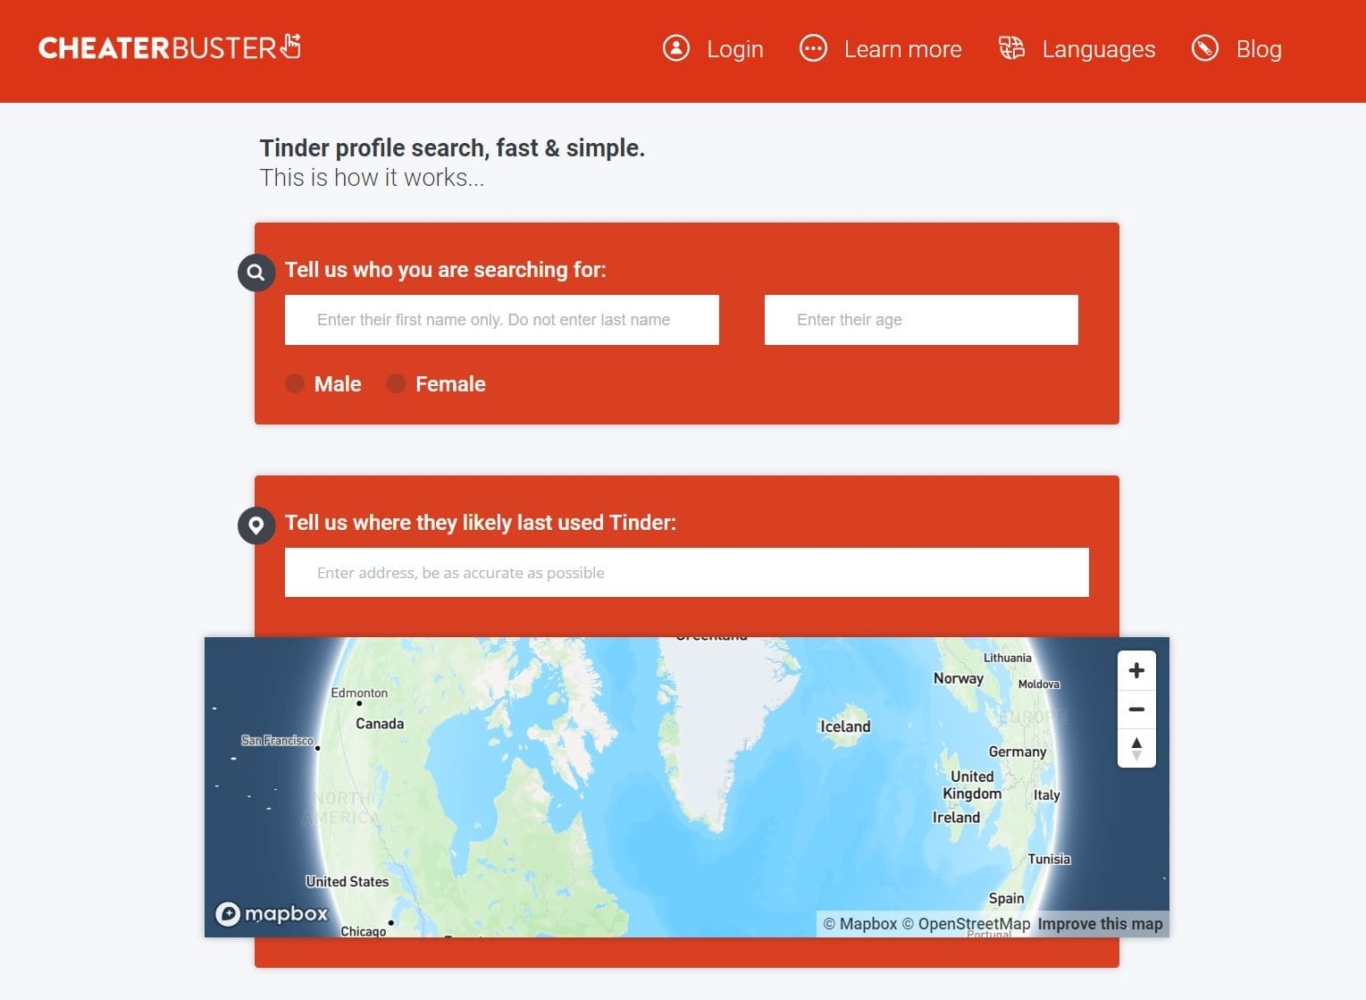 la pagina principale del sito web Cheaterbuster, dove è possibile cercare informazioni sulle persone di Tinder